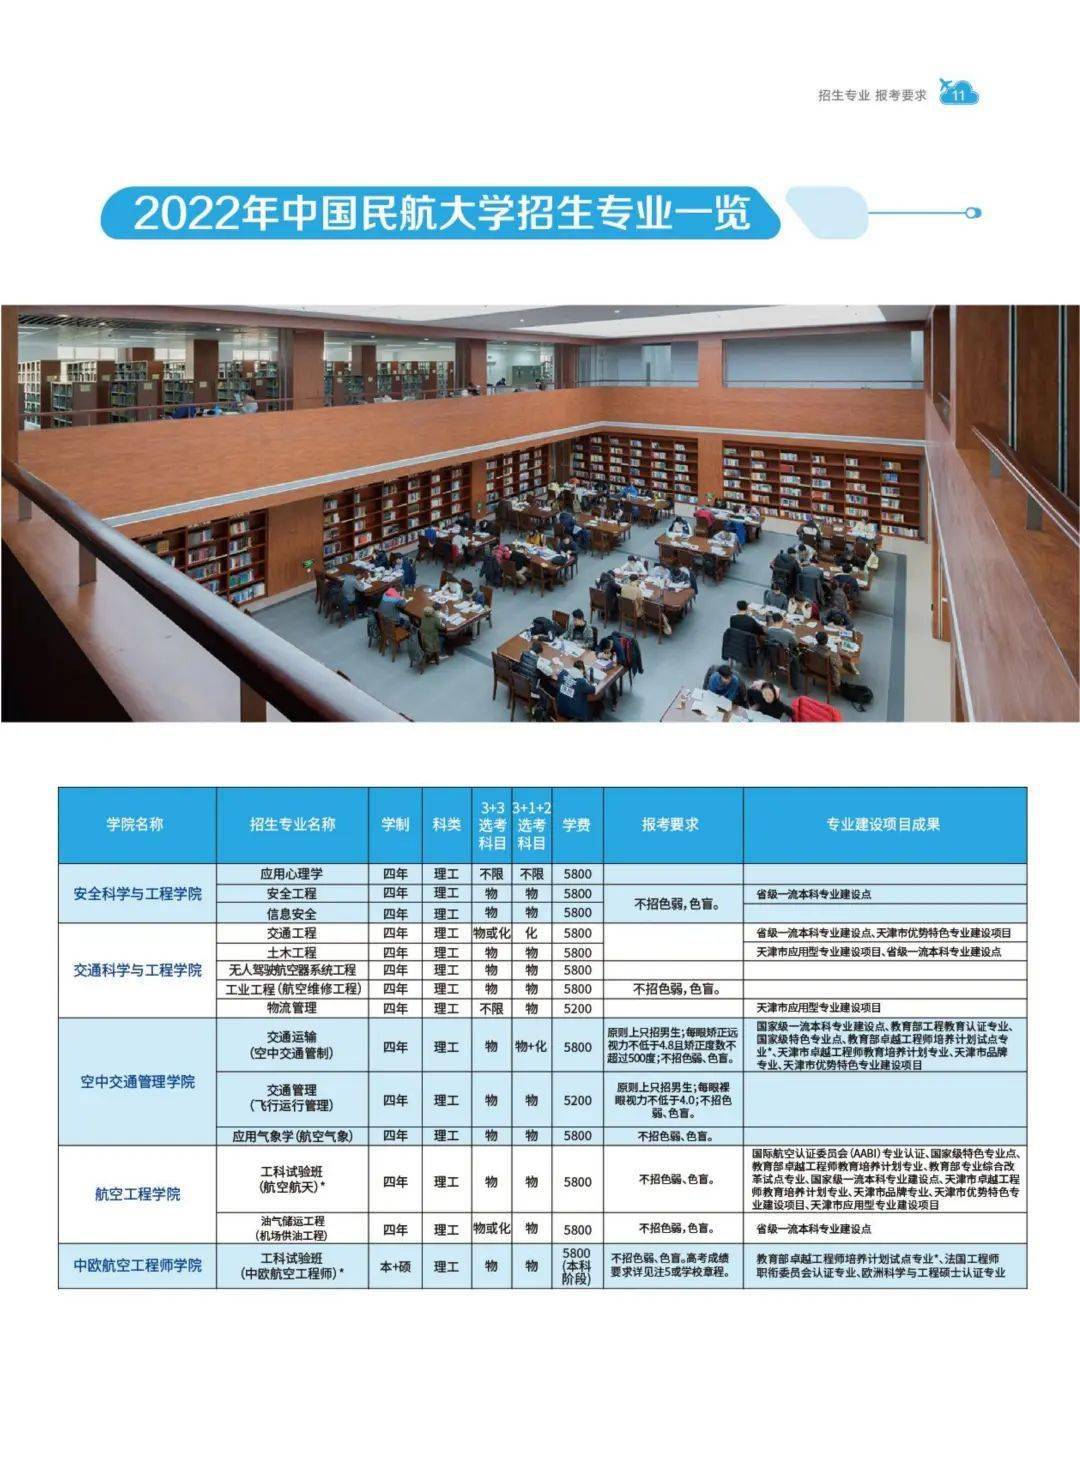 考生请查收中国民航大学2022本科招生报考指南